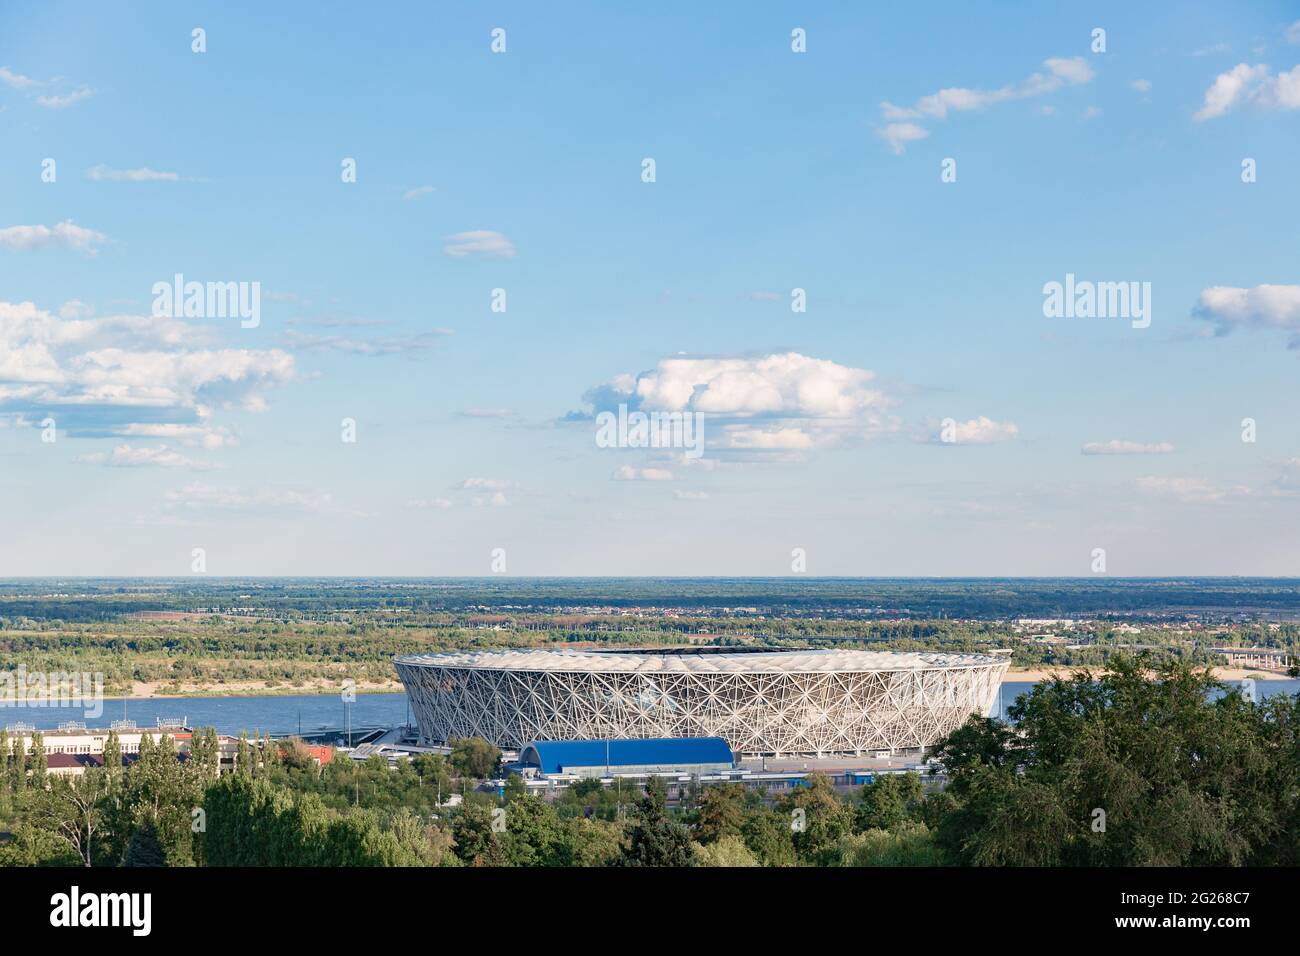 WOLGOGRAD, RUSSLAND - 16. AUGUST 2020: Die Wolgograd Arena ist ein Fußballstadion der internationalen Klasse, das in Wolgograd in der Nähe der Wolga für die FIFA 2018 gebaut wurde Stockfoto